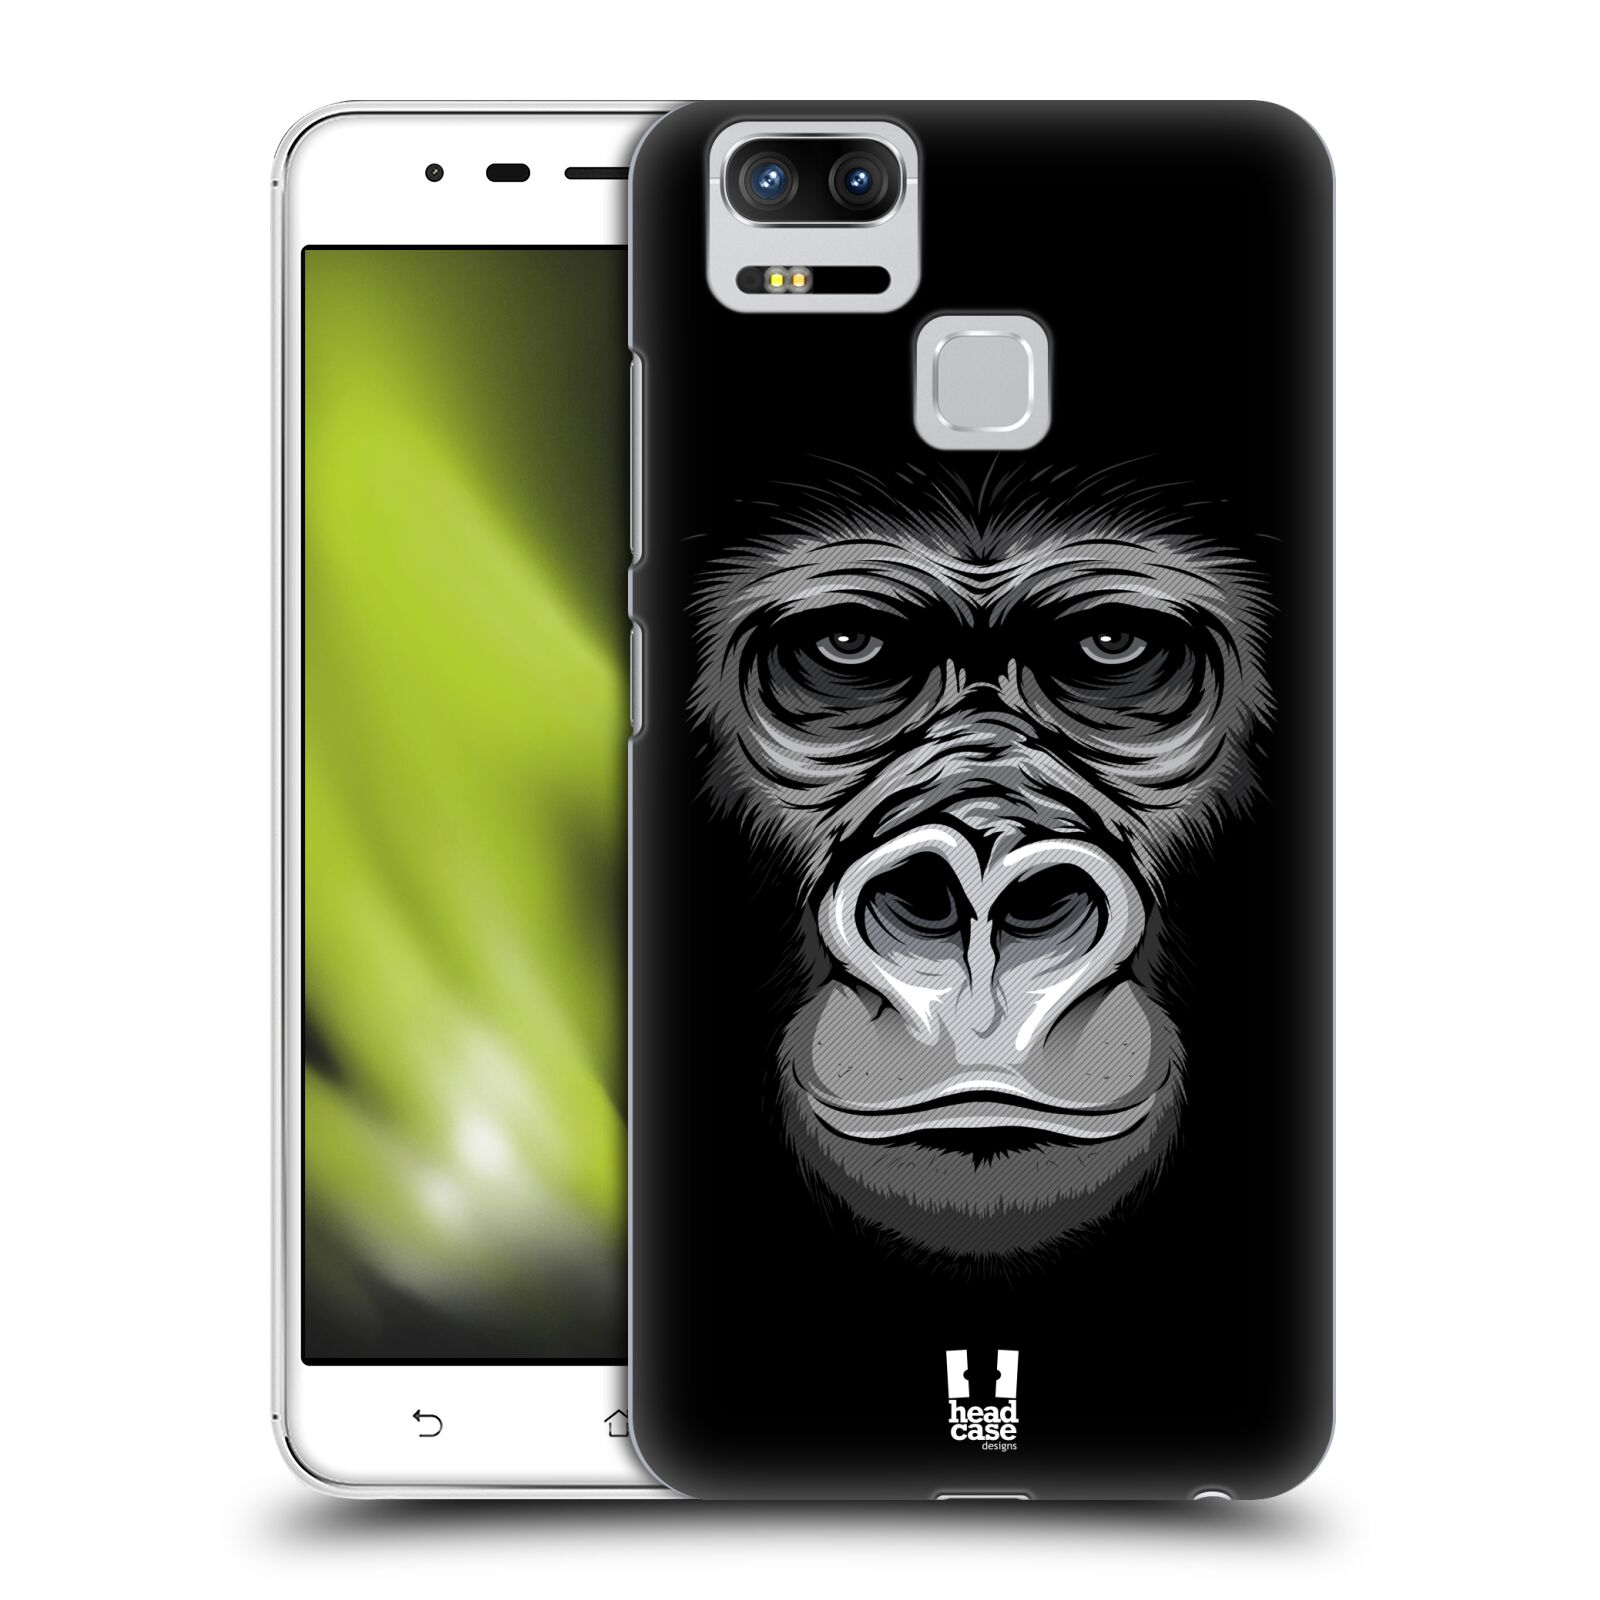 HEAD CASE plastový obal na mobil Asus Zenfone 3 Zoom ZE553KL vzor Zvíře kreslená tvář 2 gorila